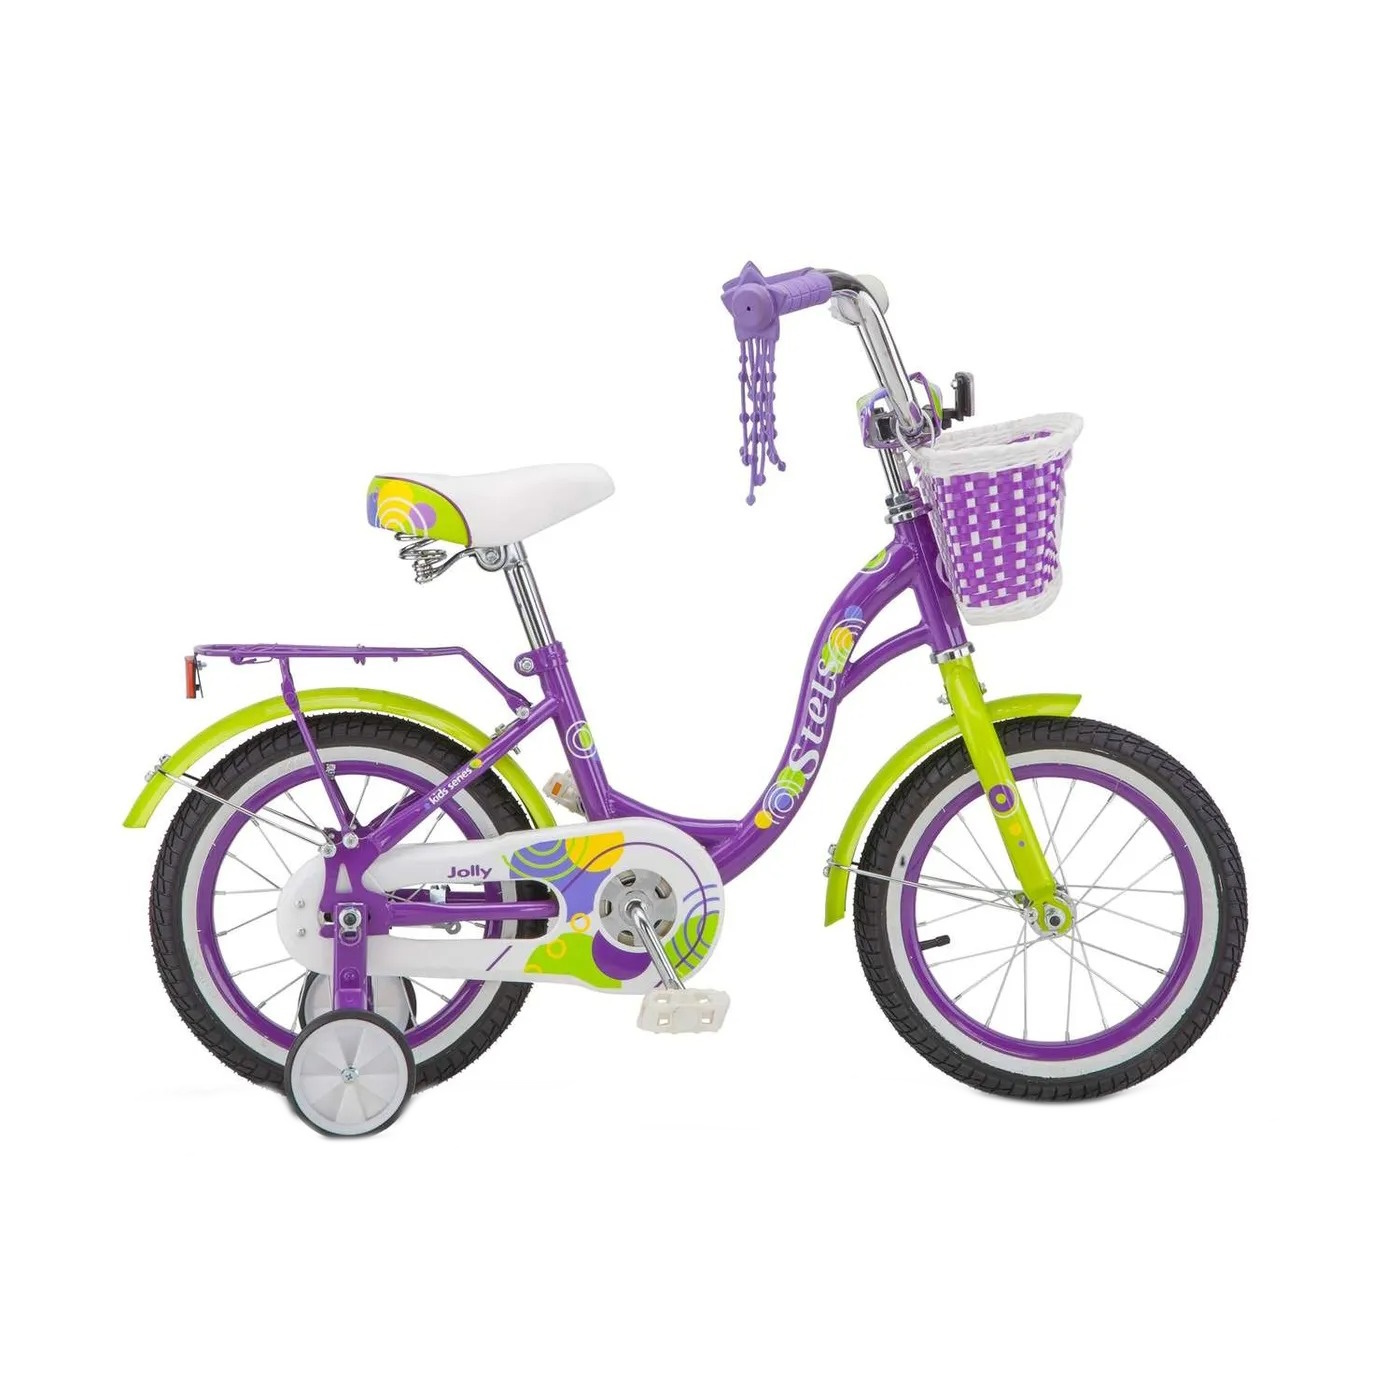 Детский велосипед STELS Jolly 14 V010 (2019) фиолетовый 9.5